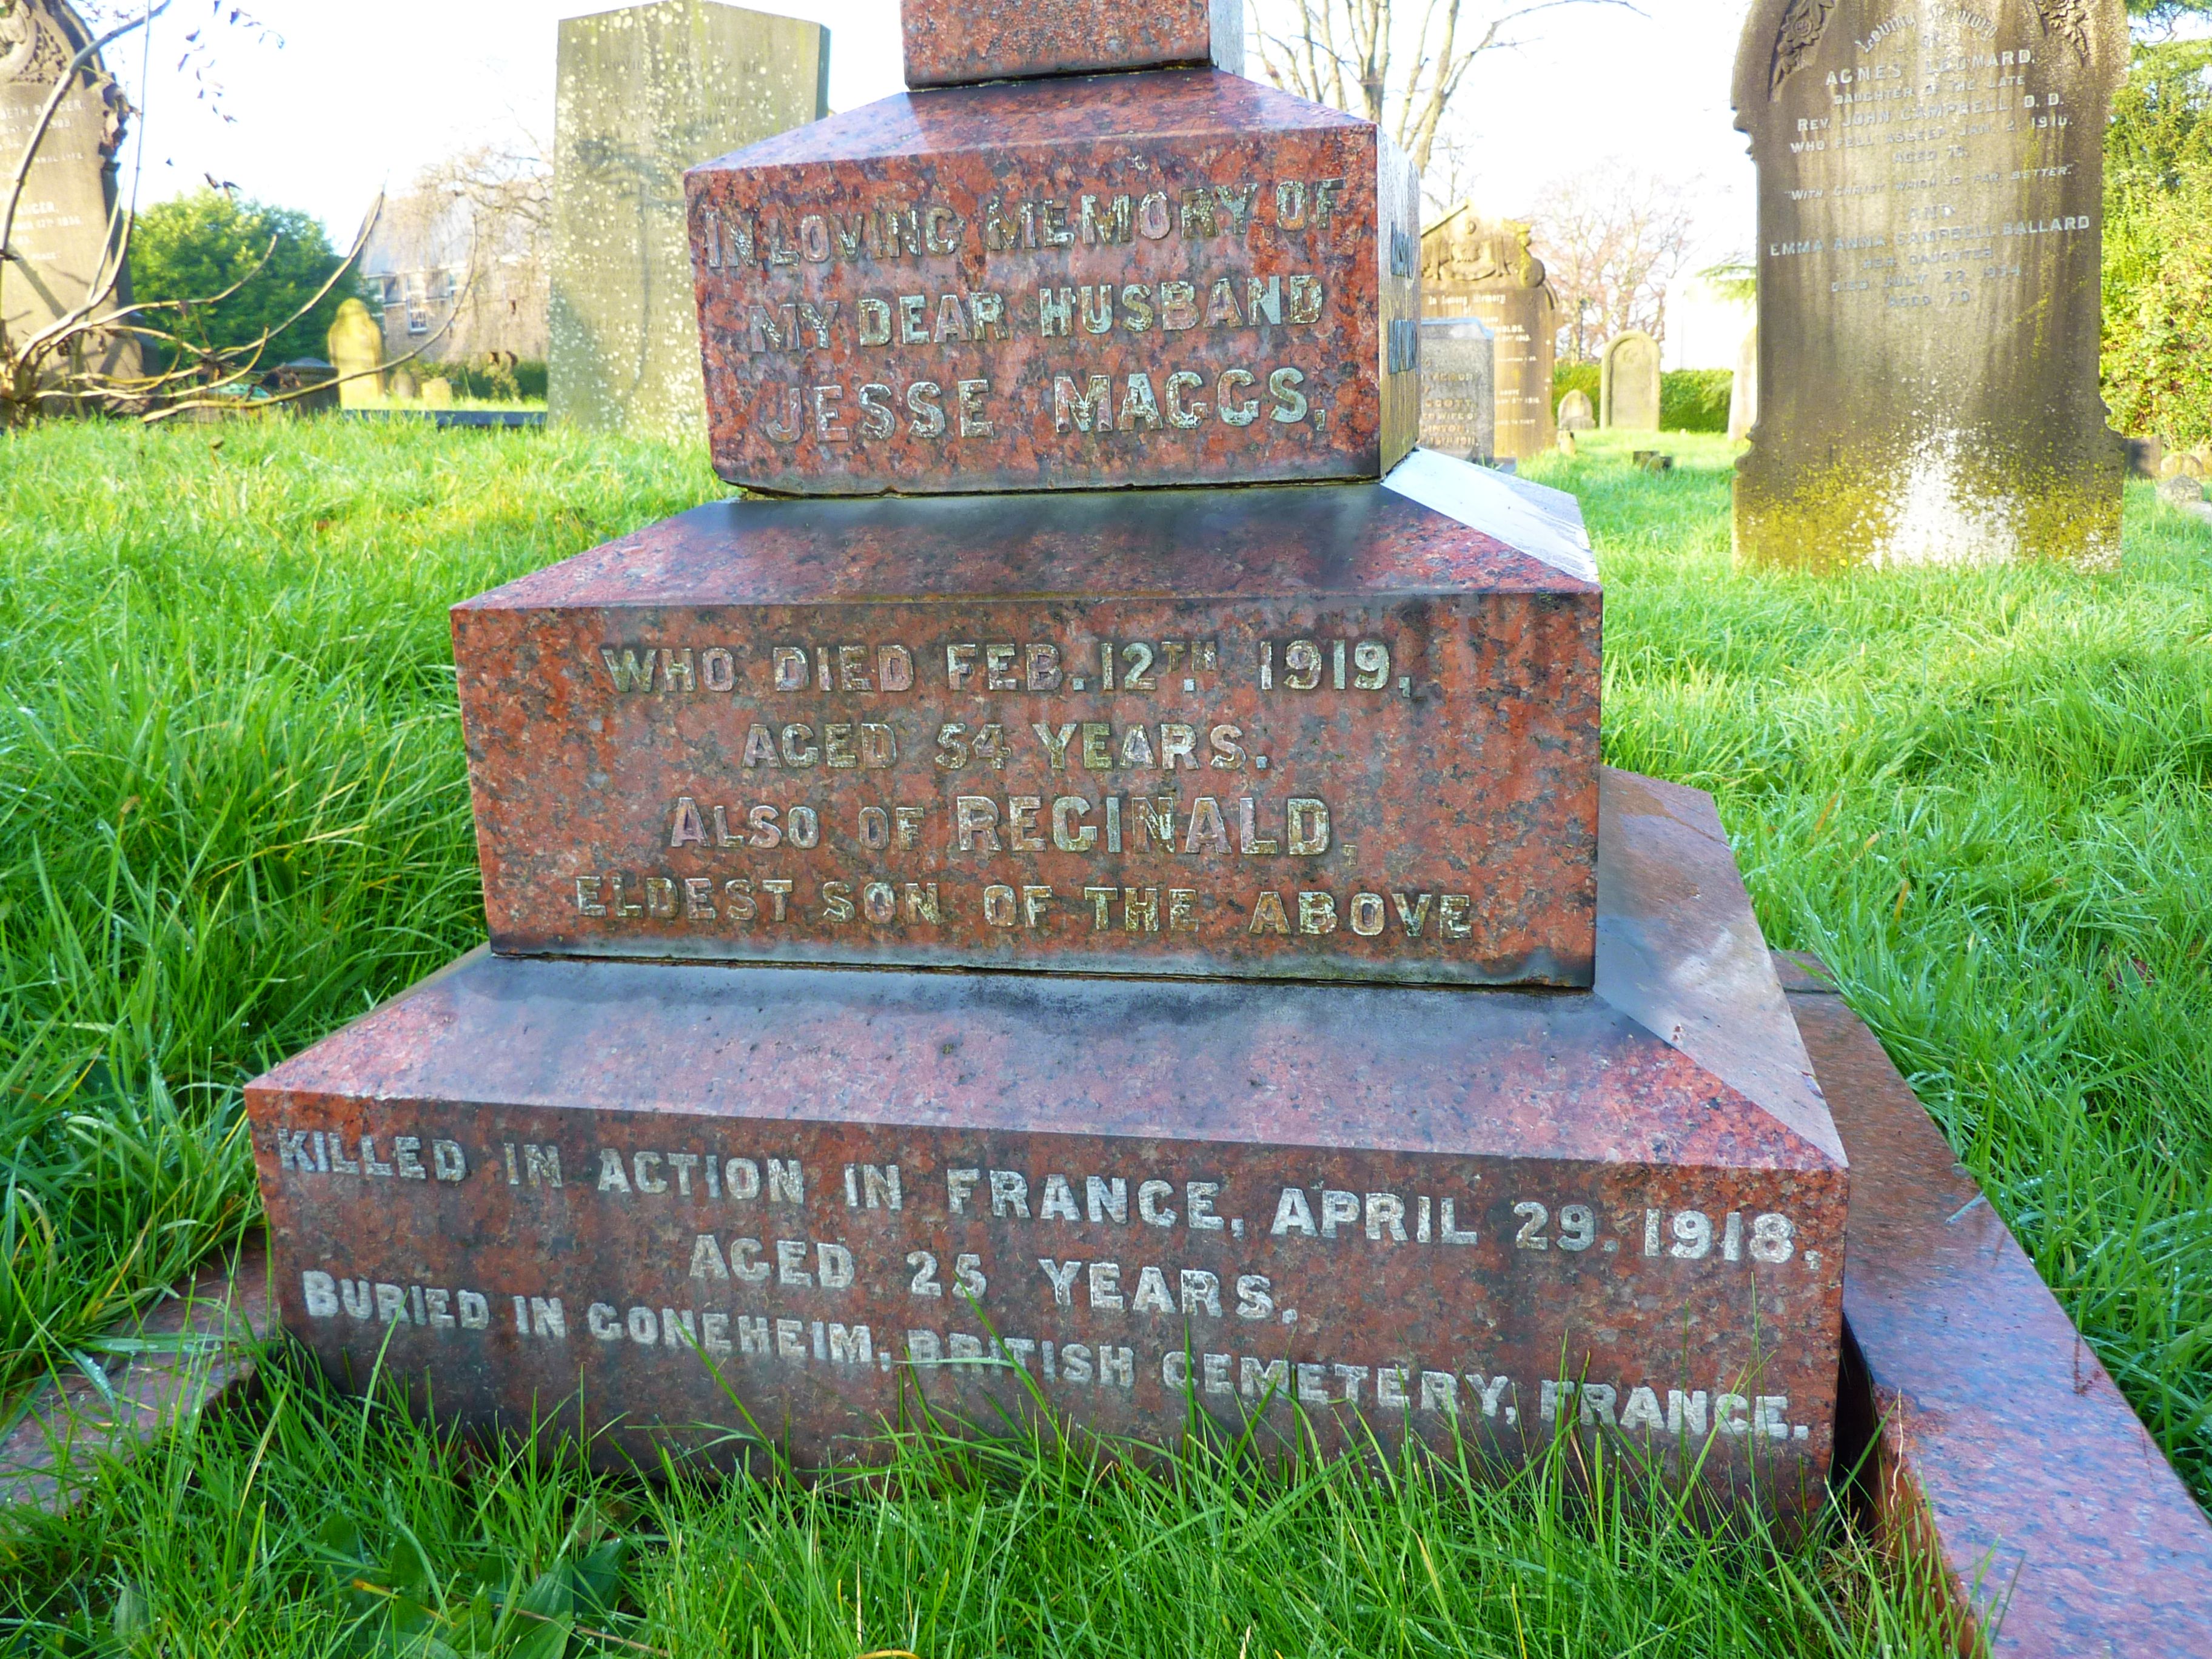 Maggs grave inscription to Reginald